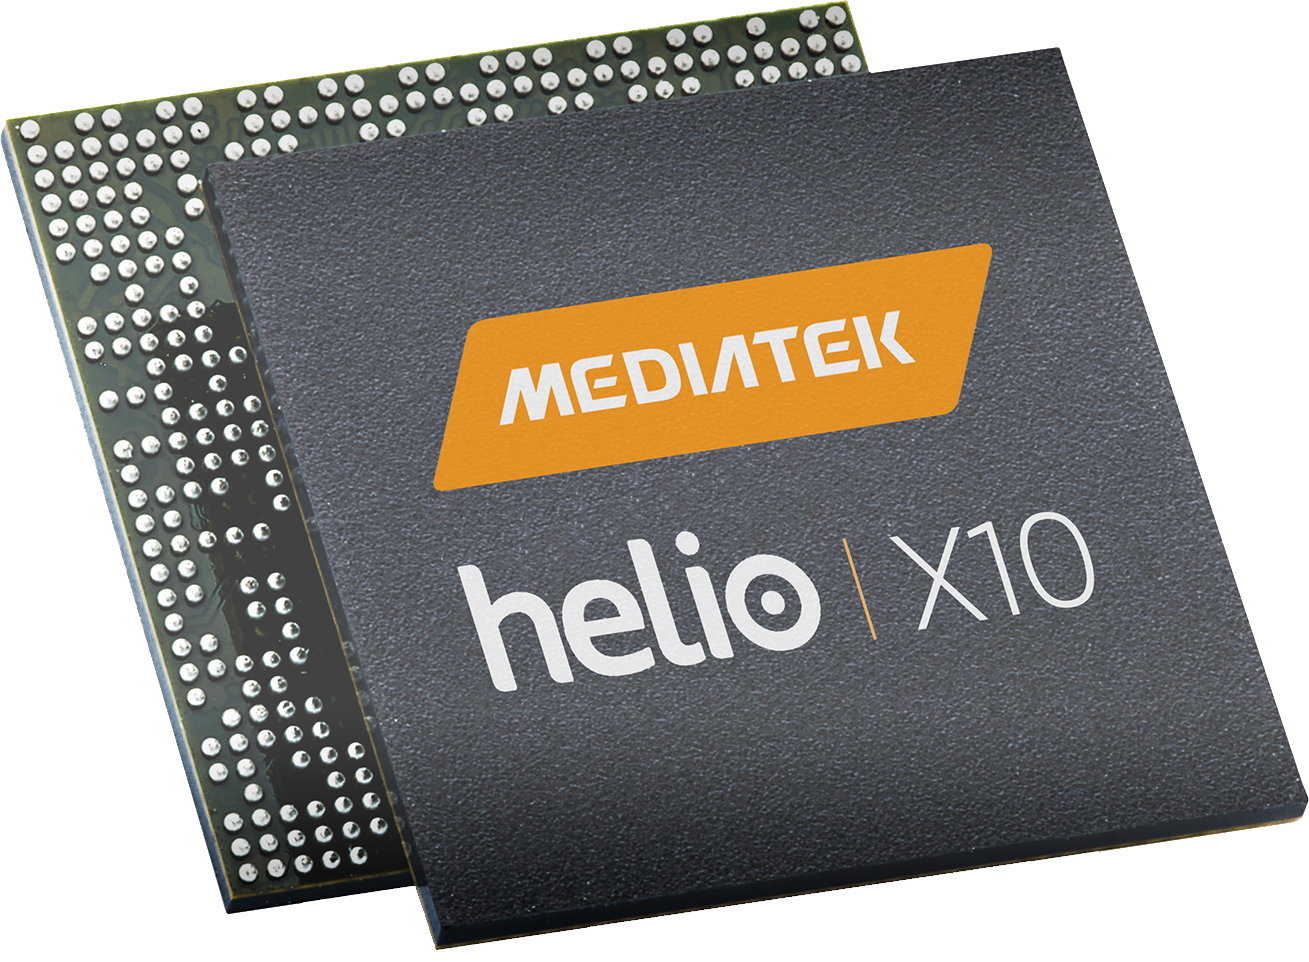 MediaTek-Helio-X10